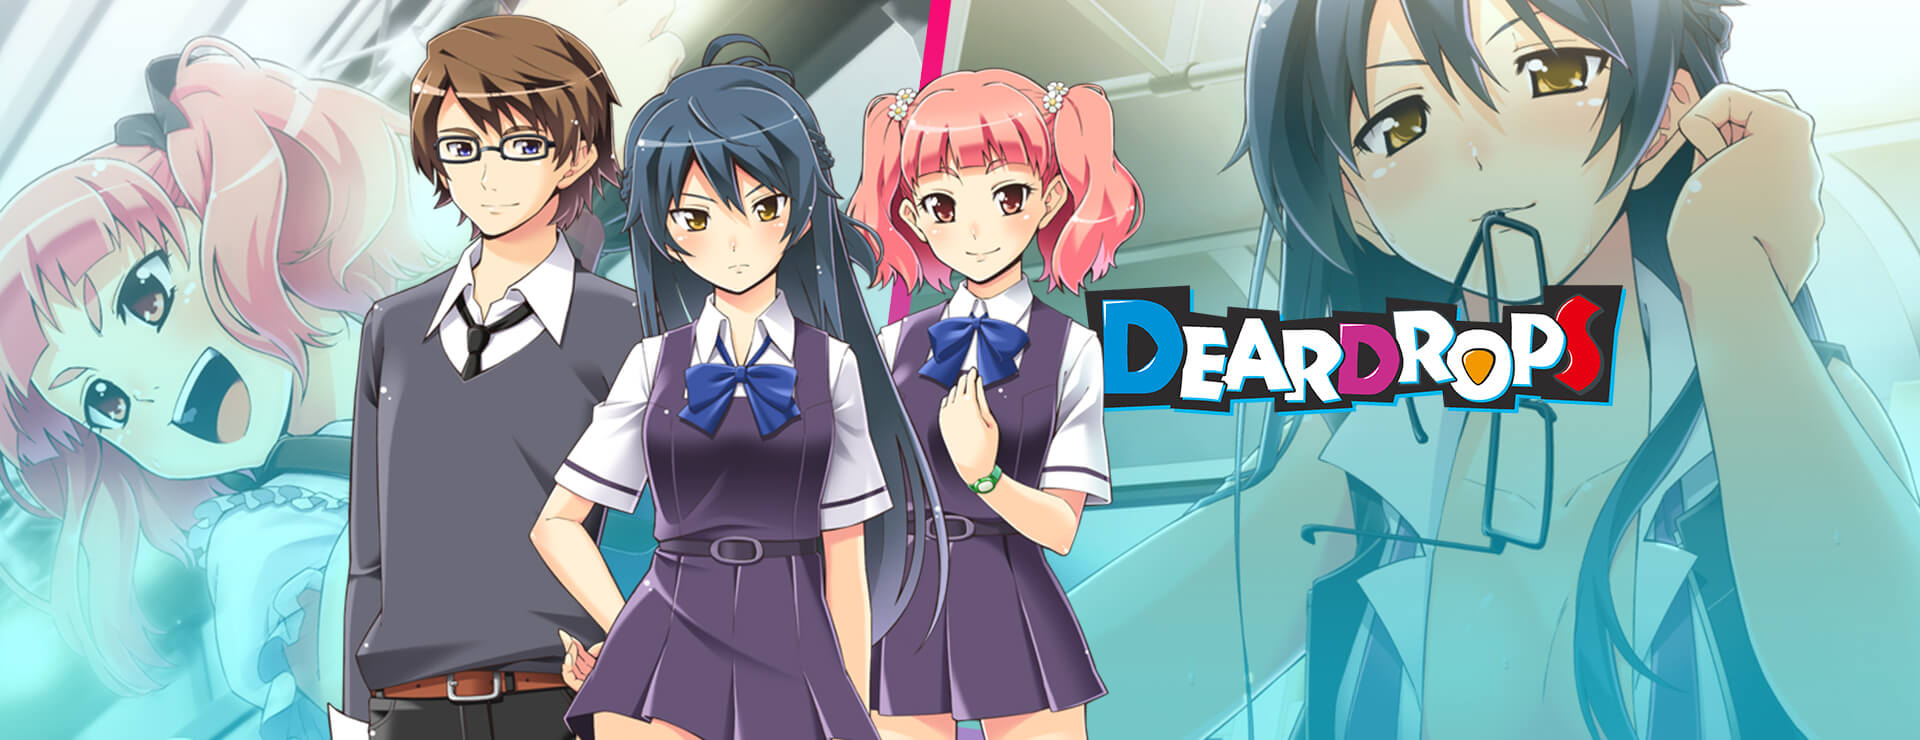 DEARDROPS - Visual Novel Game